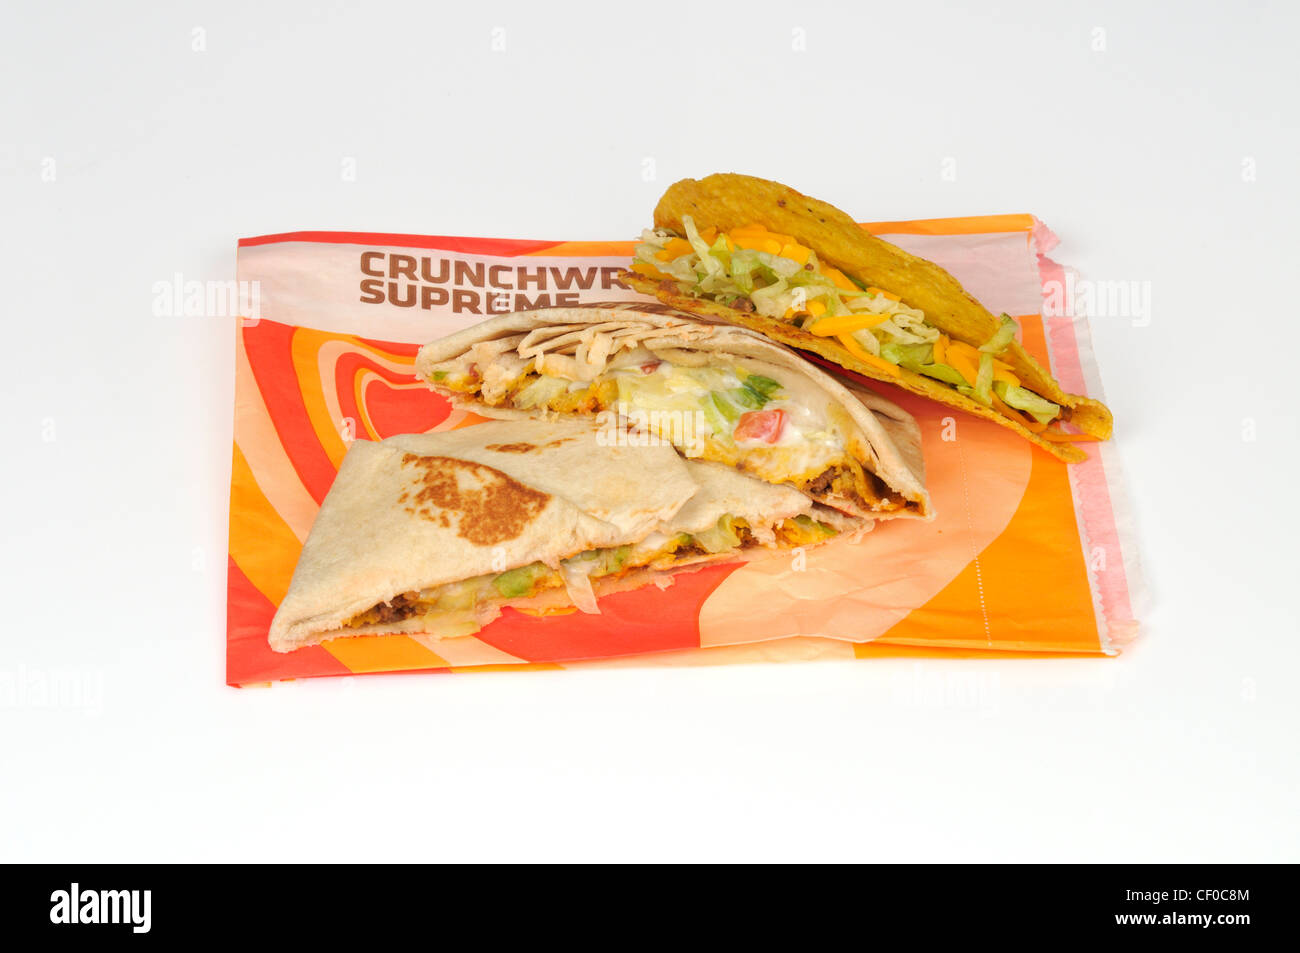 Taco Bell Crunchwrap oberste Tortilla in zwei Hälften geschnitten und ein Taco auf Wrapper auf weißem Hintergrund Ausschnitt Stockfoto